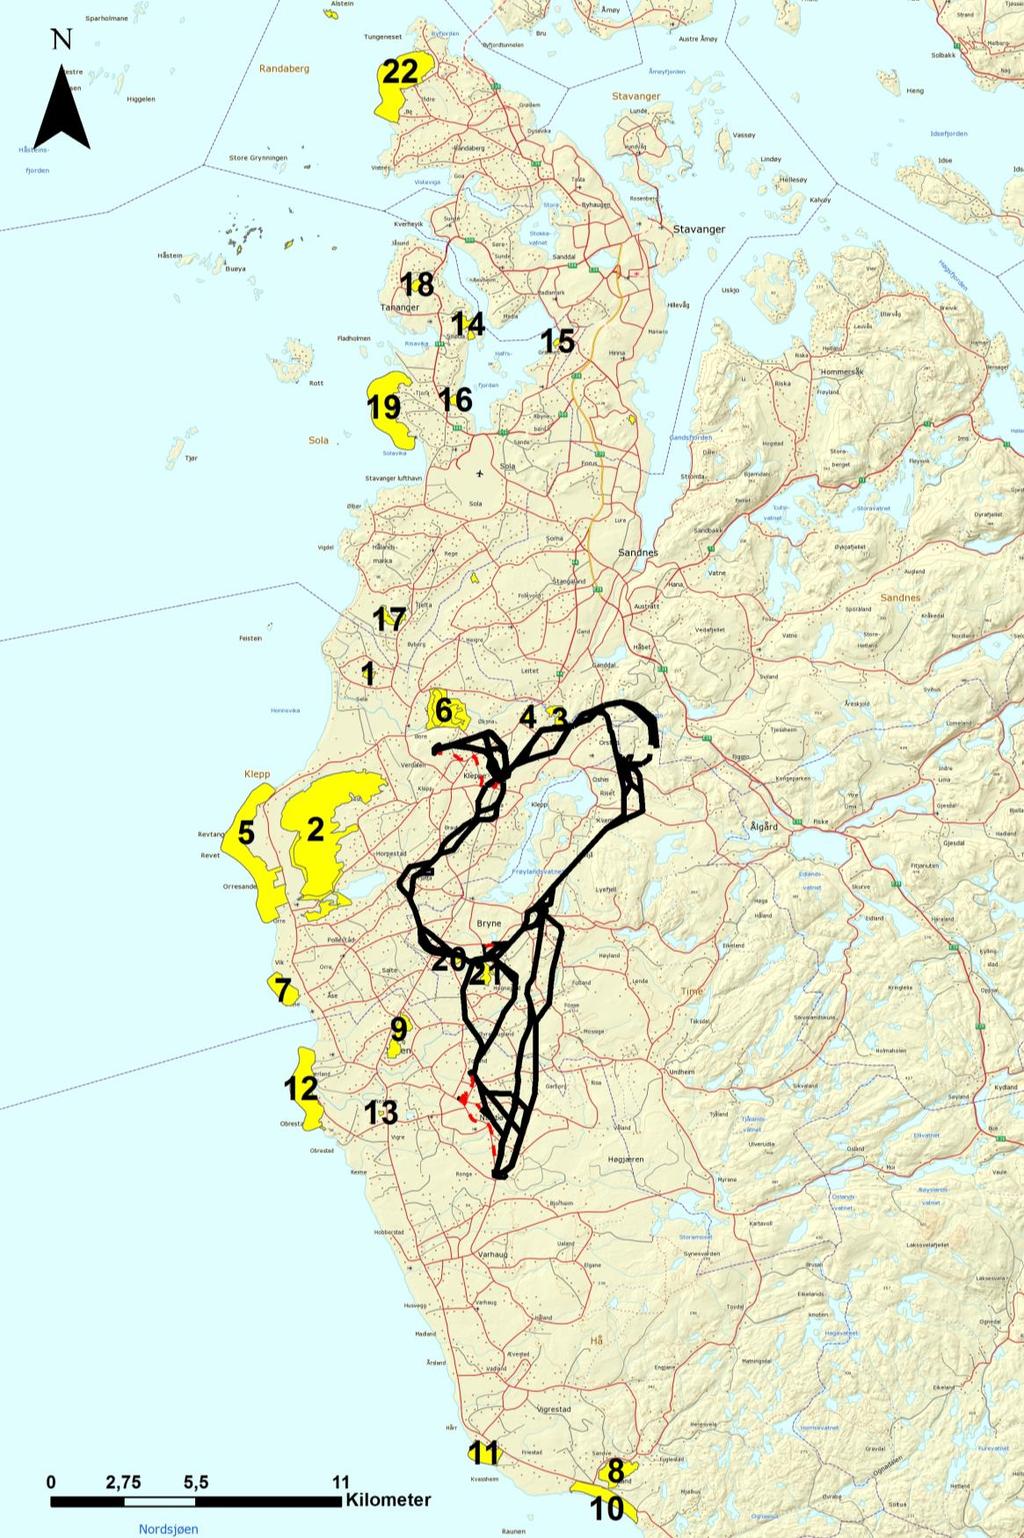 Alle lokalitetene som inngår i Jæren våtmarksystem er verna etter naturmangfoldloven, og omfatter innsjøer, myrer og gruntvannområder i sjø. Figur 6.